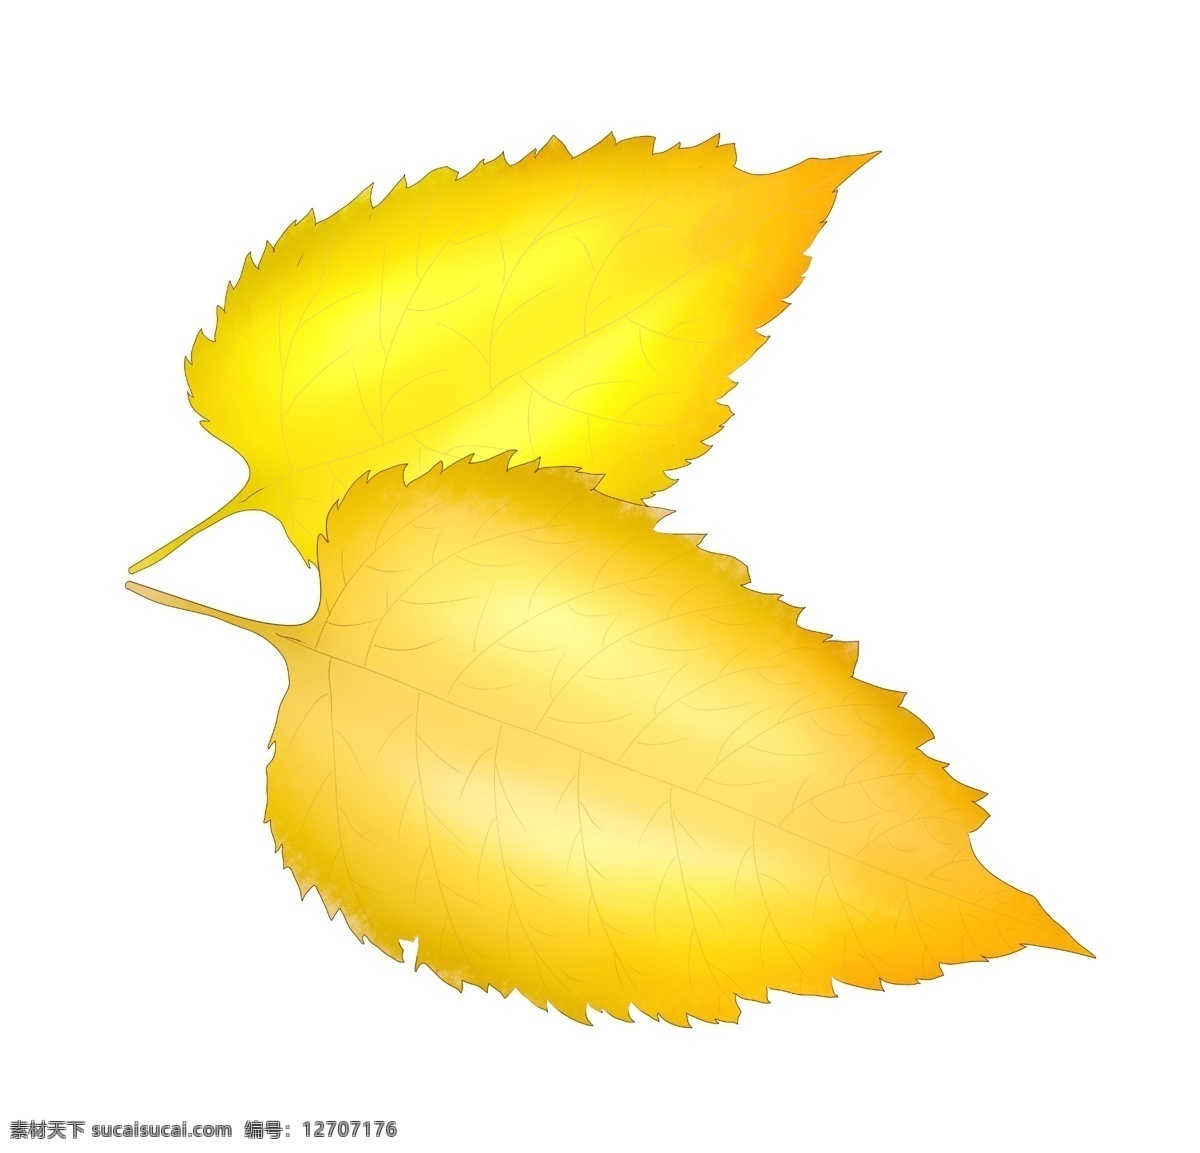 秋天 黄色 树叶 插图 两片树叶 黄色树叶 心形树叶 黄 金色 装饰图案 海报插画 广告插画 秋分